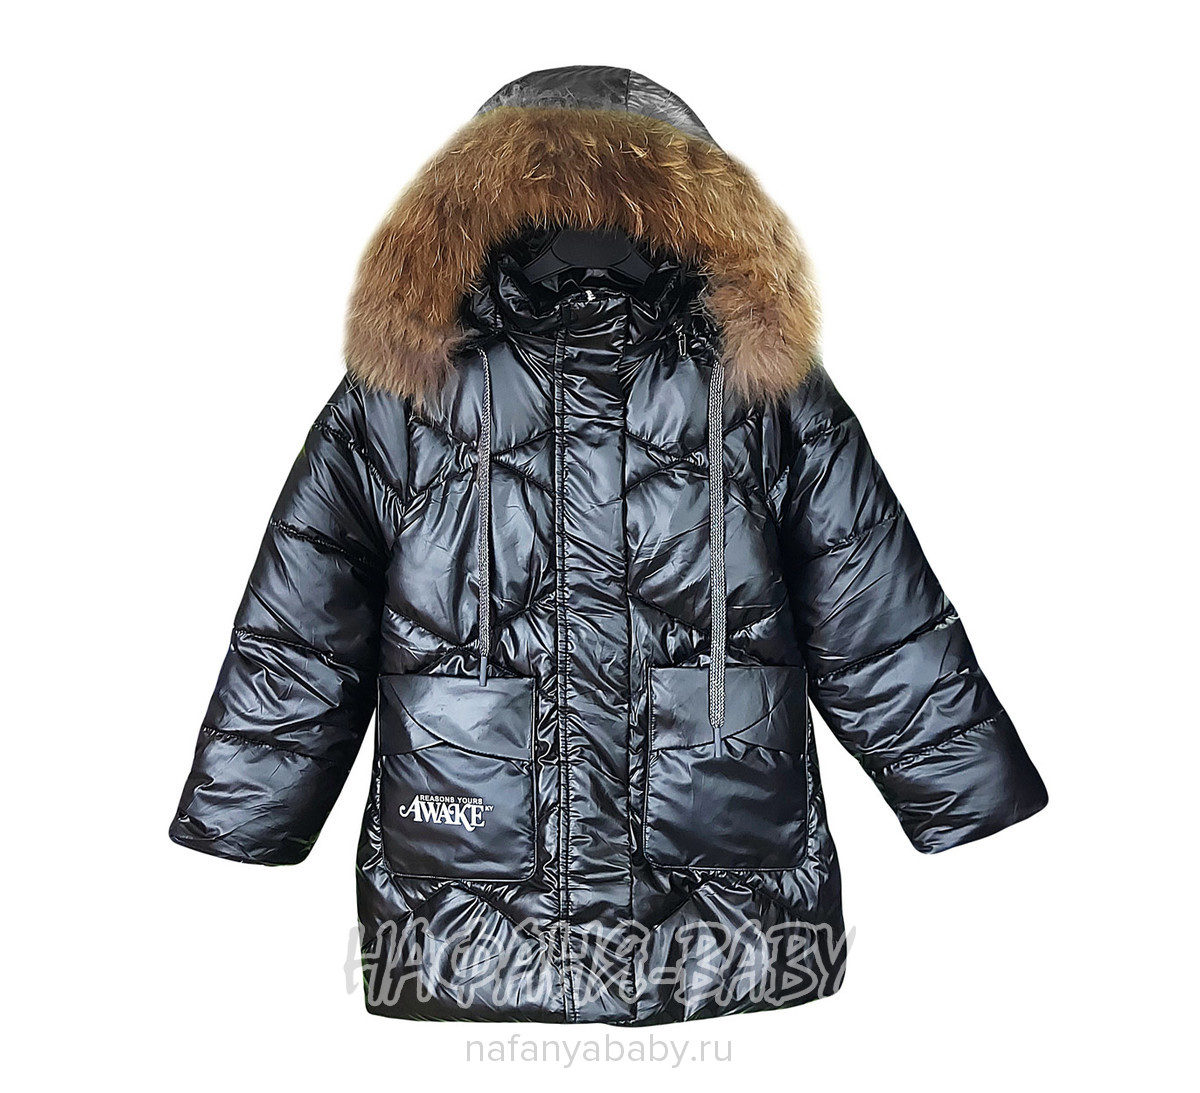 Зимняя удлиненная куртка  YOI LI арт: 227, 1-4 года, 5-9 лет, цвет черный, оптом Китай (Пекин)